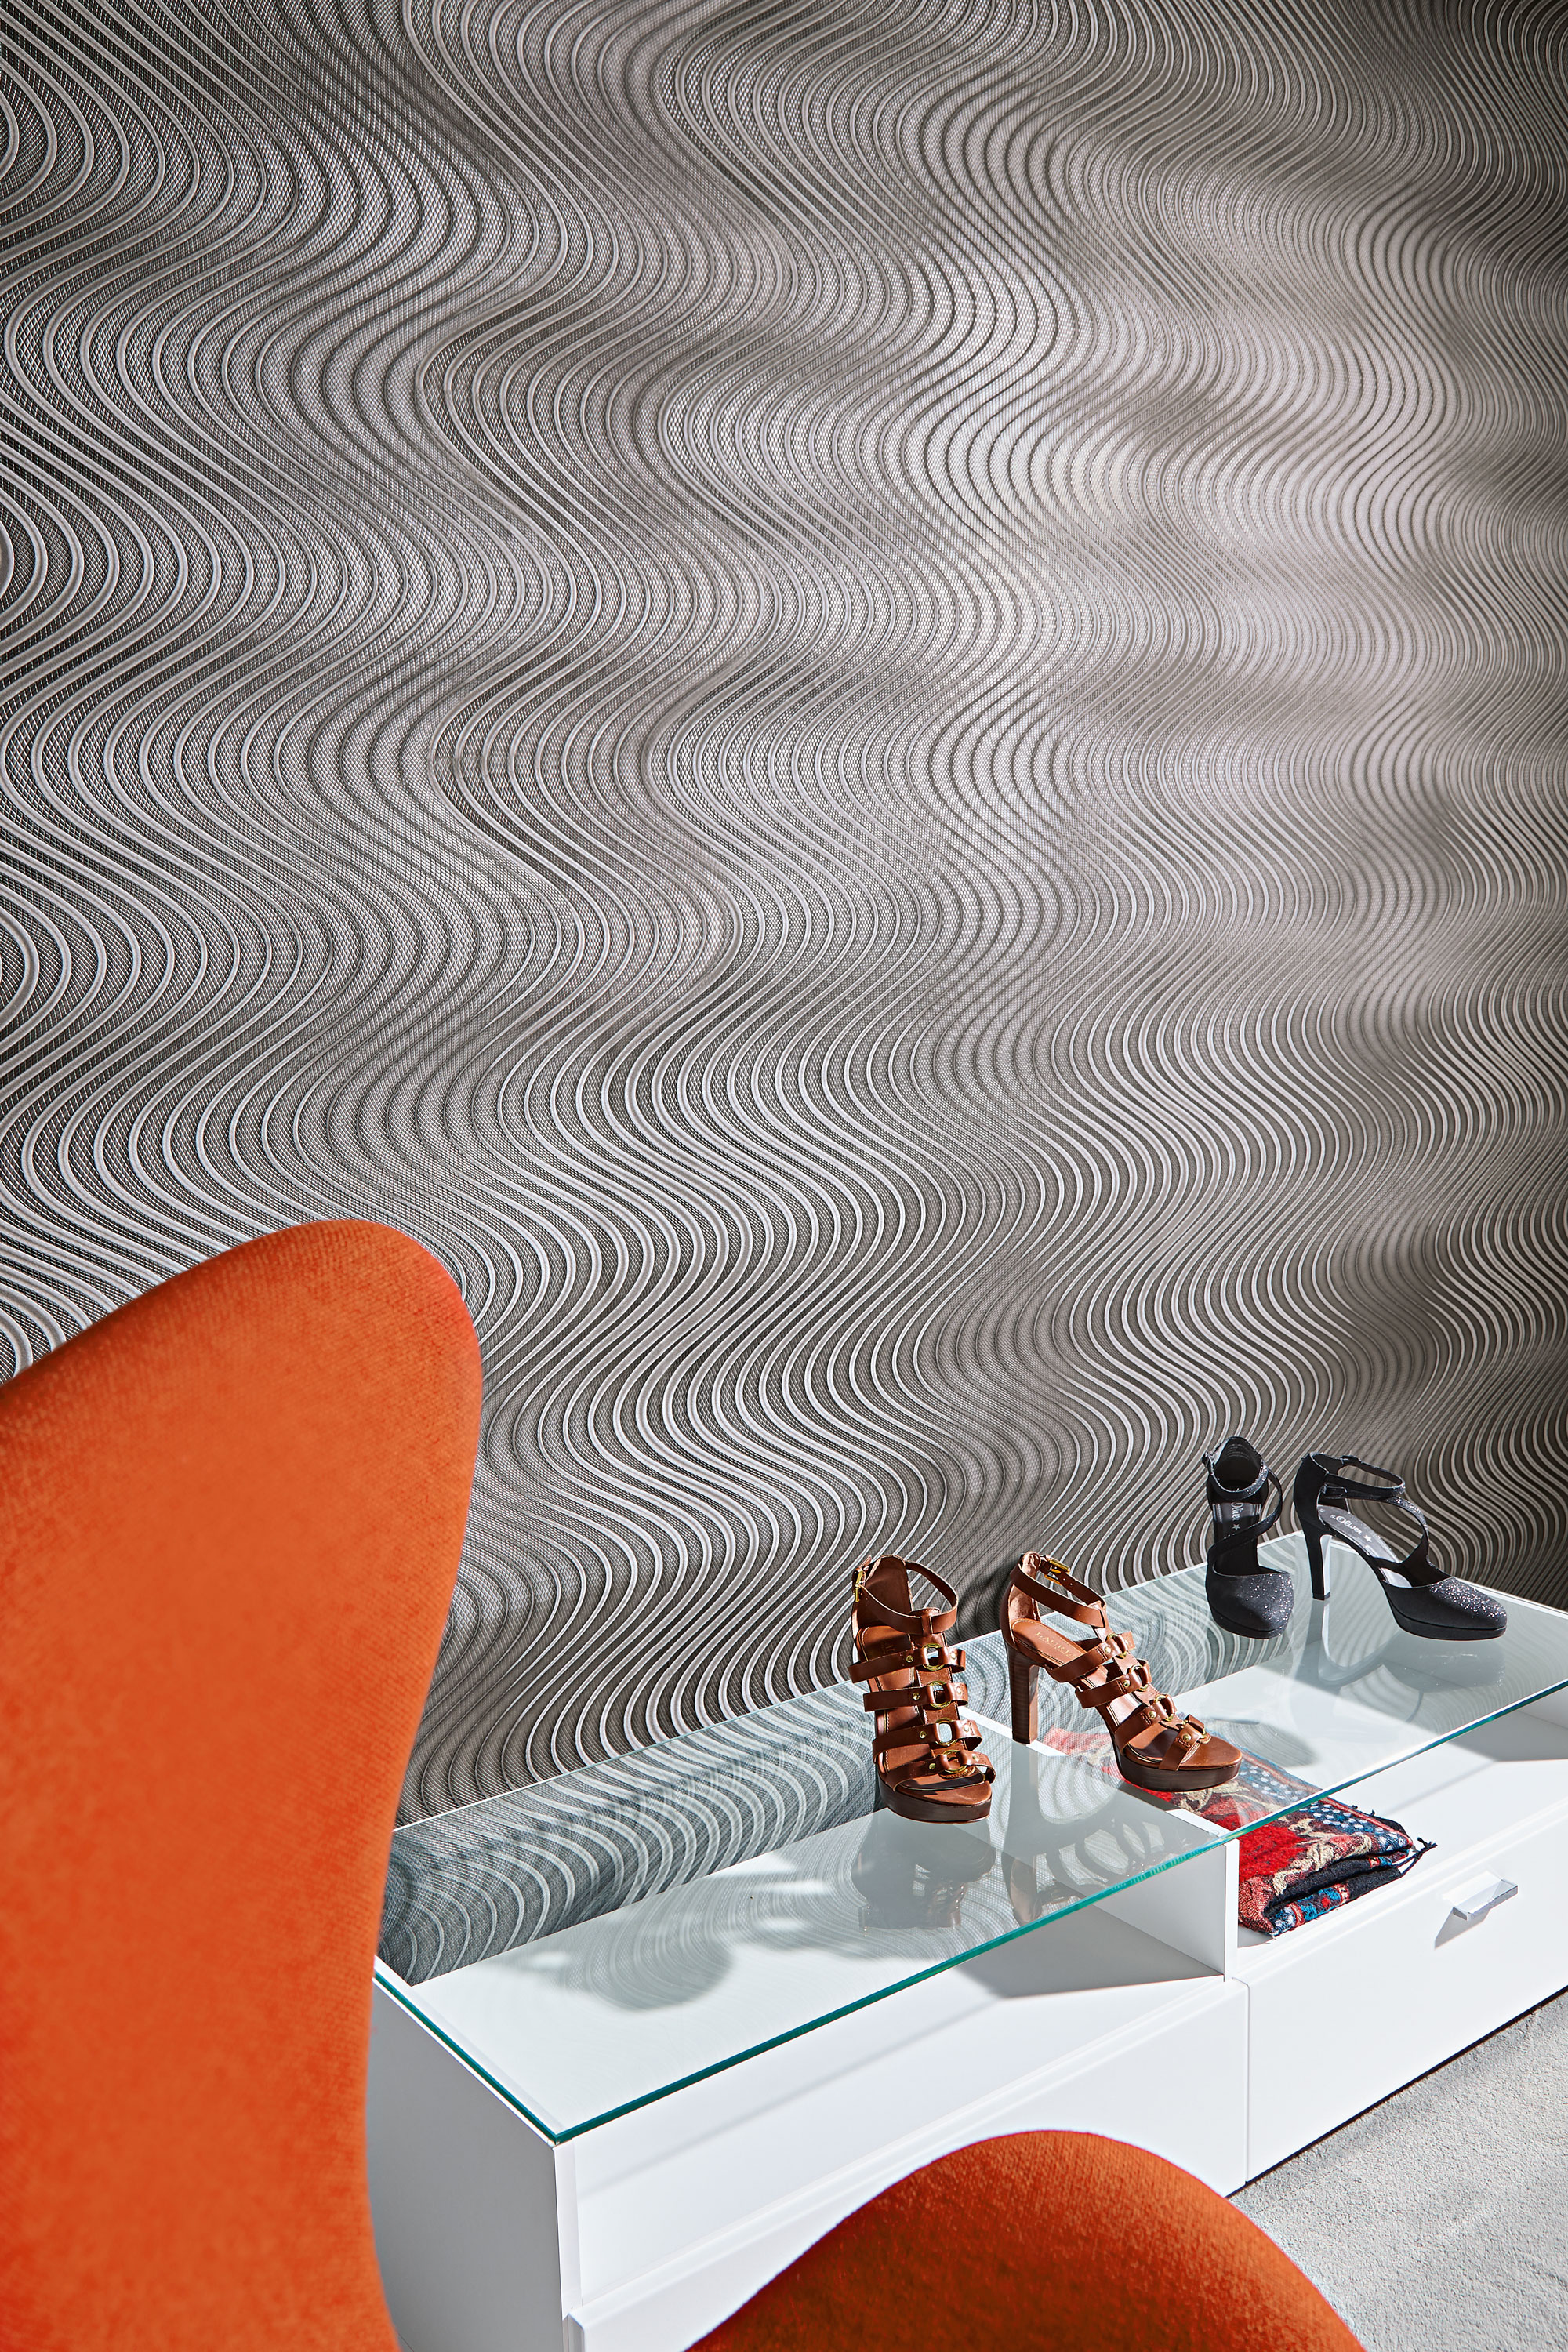 Eine Innenansicht einer Wand mit einem grauen strukturierten Muster